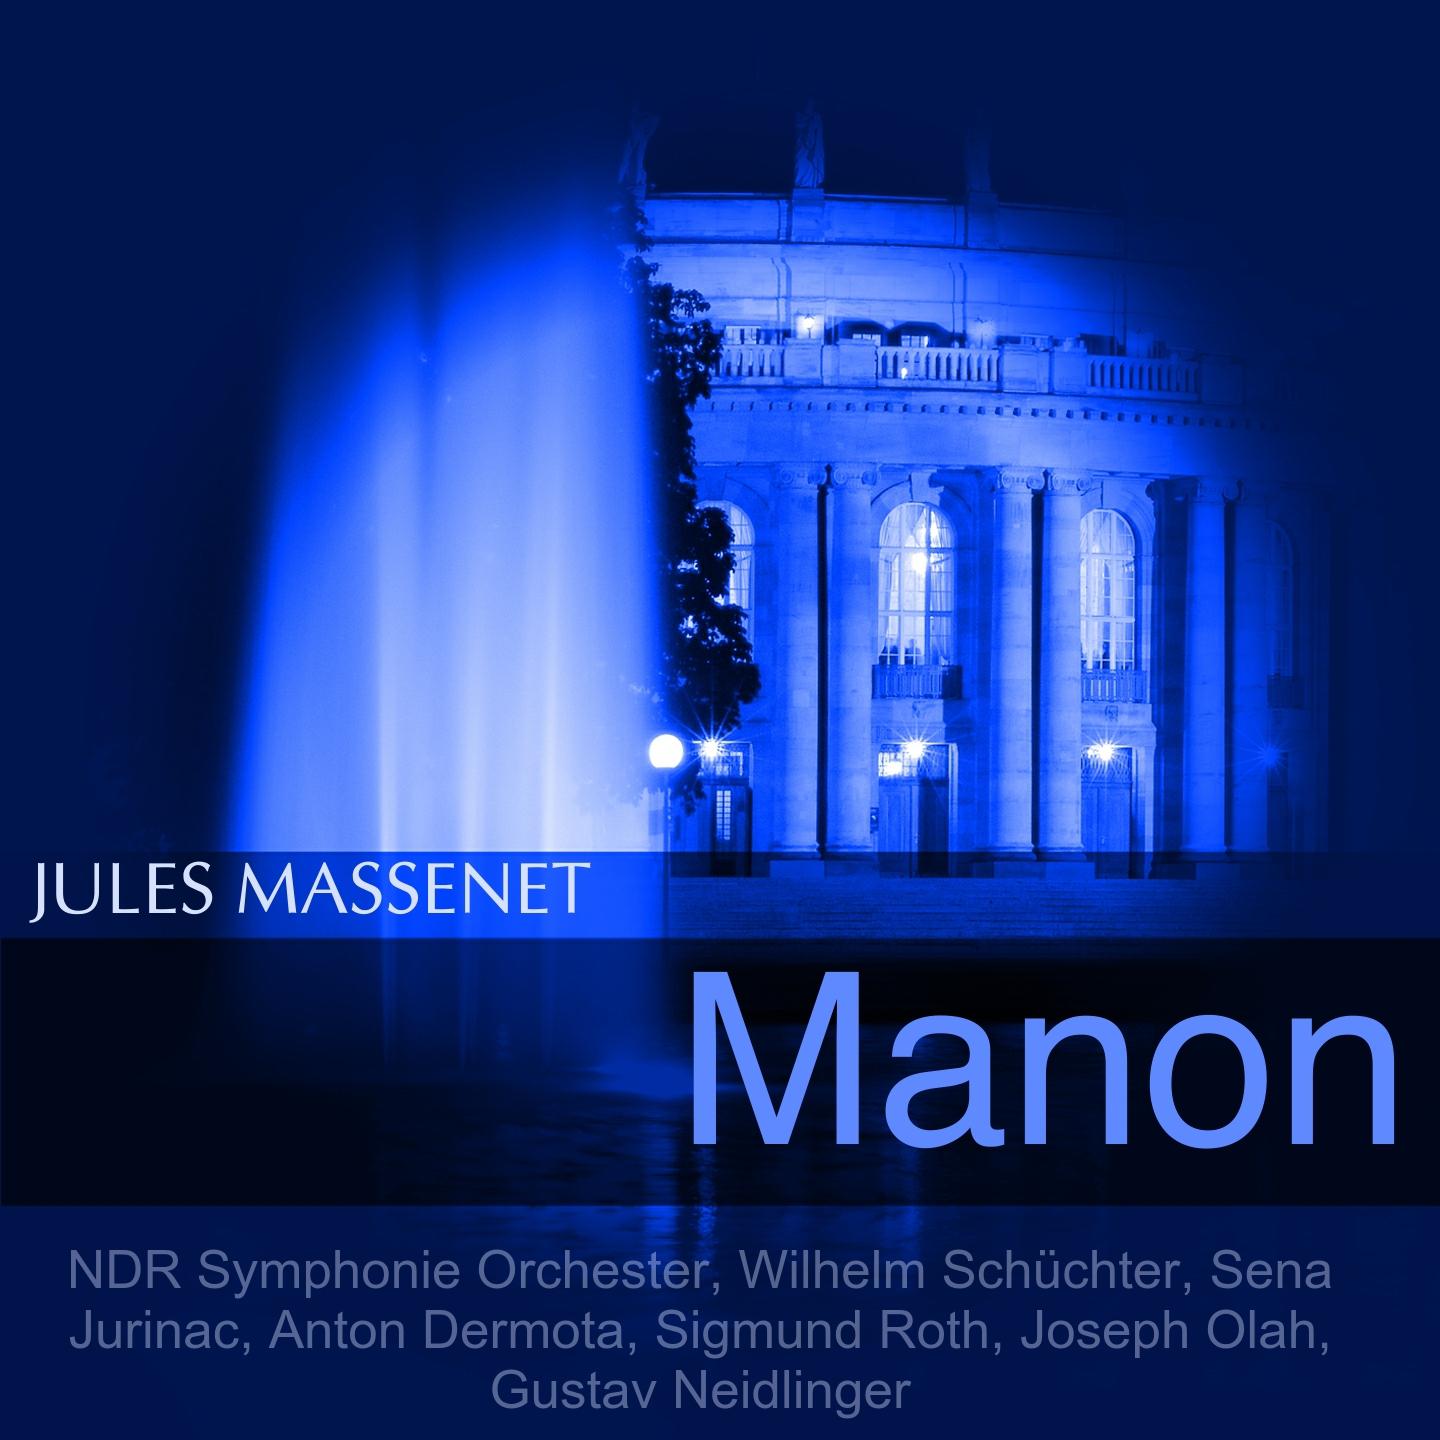 Manon, Act II: "Man nennt sie Manon" (Manon, Des Grieux)